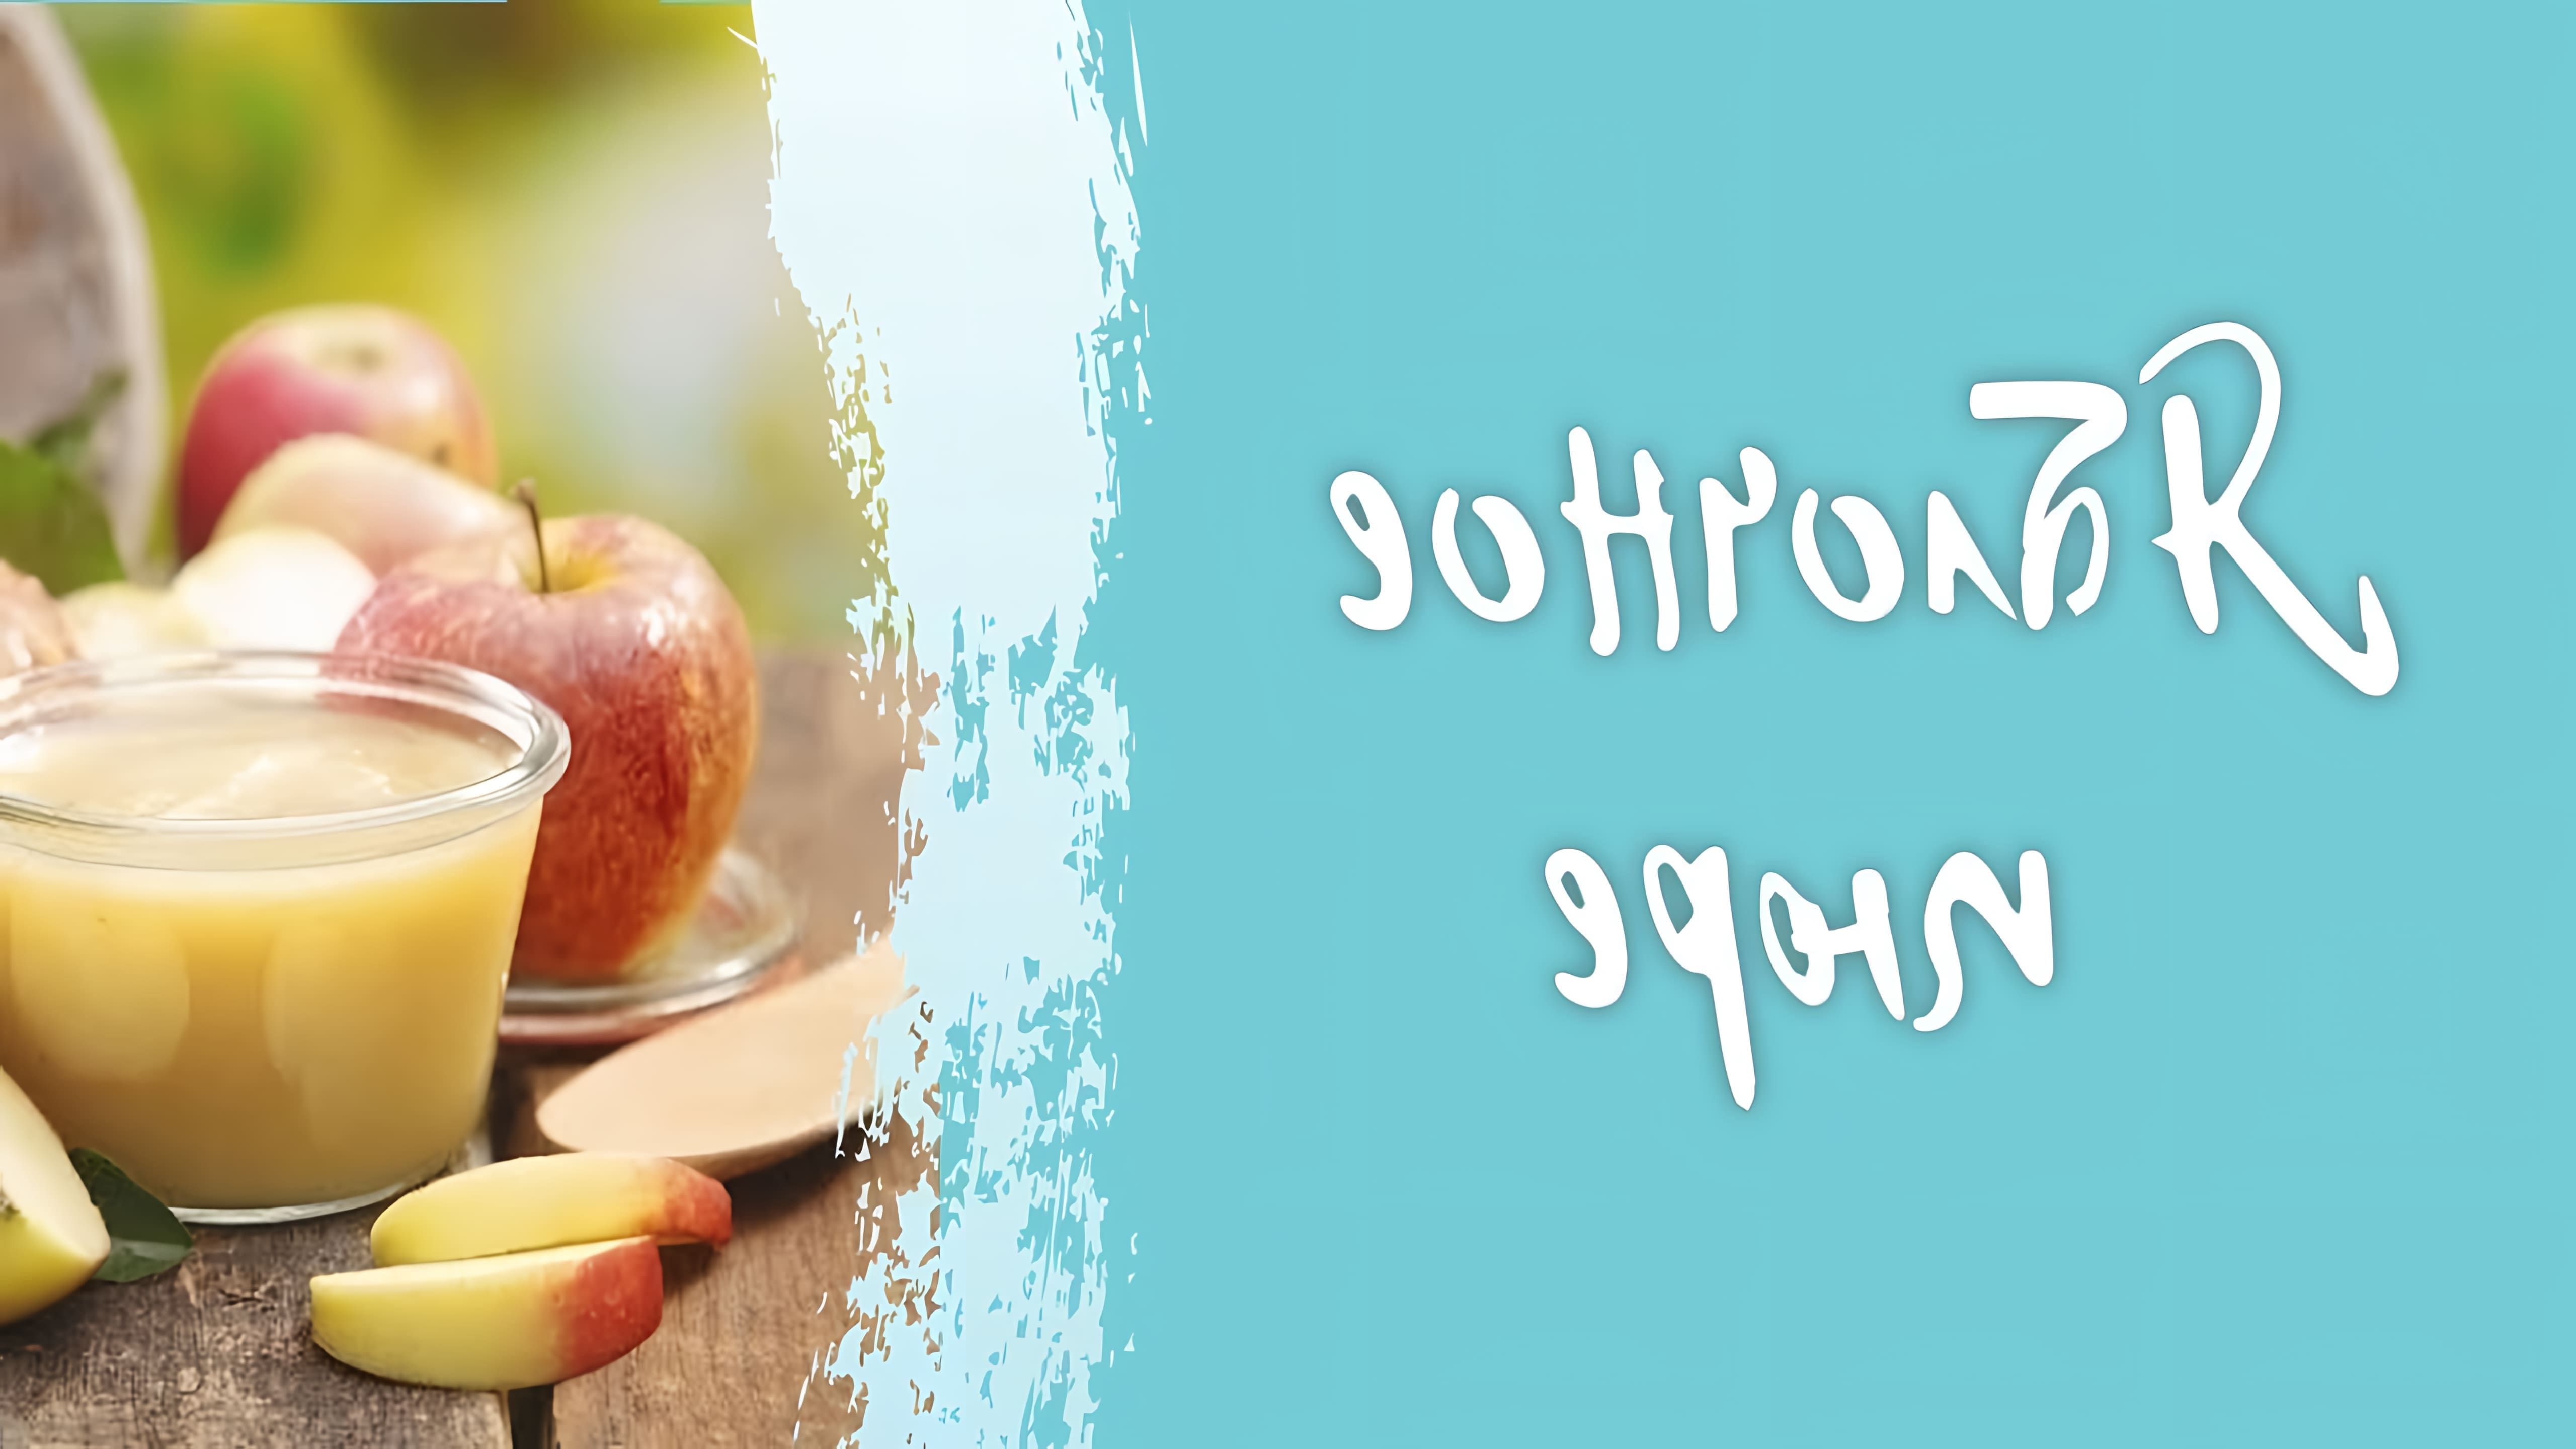 В этом видео рассказывается о приготовлении яблочного пюре, которое является основой для зефира